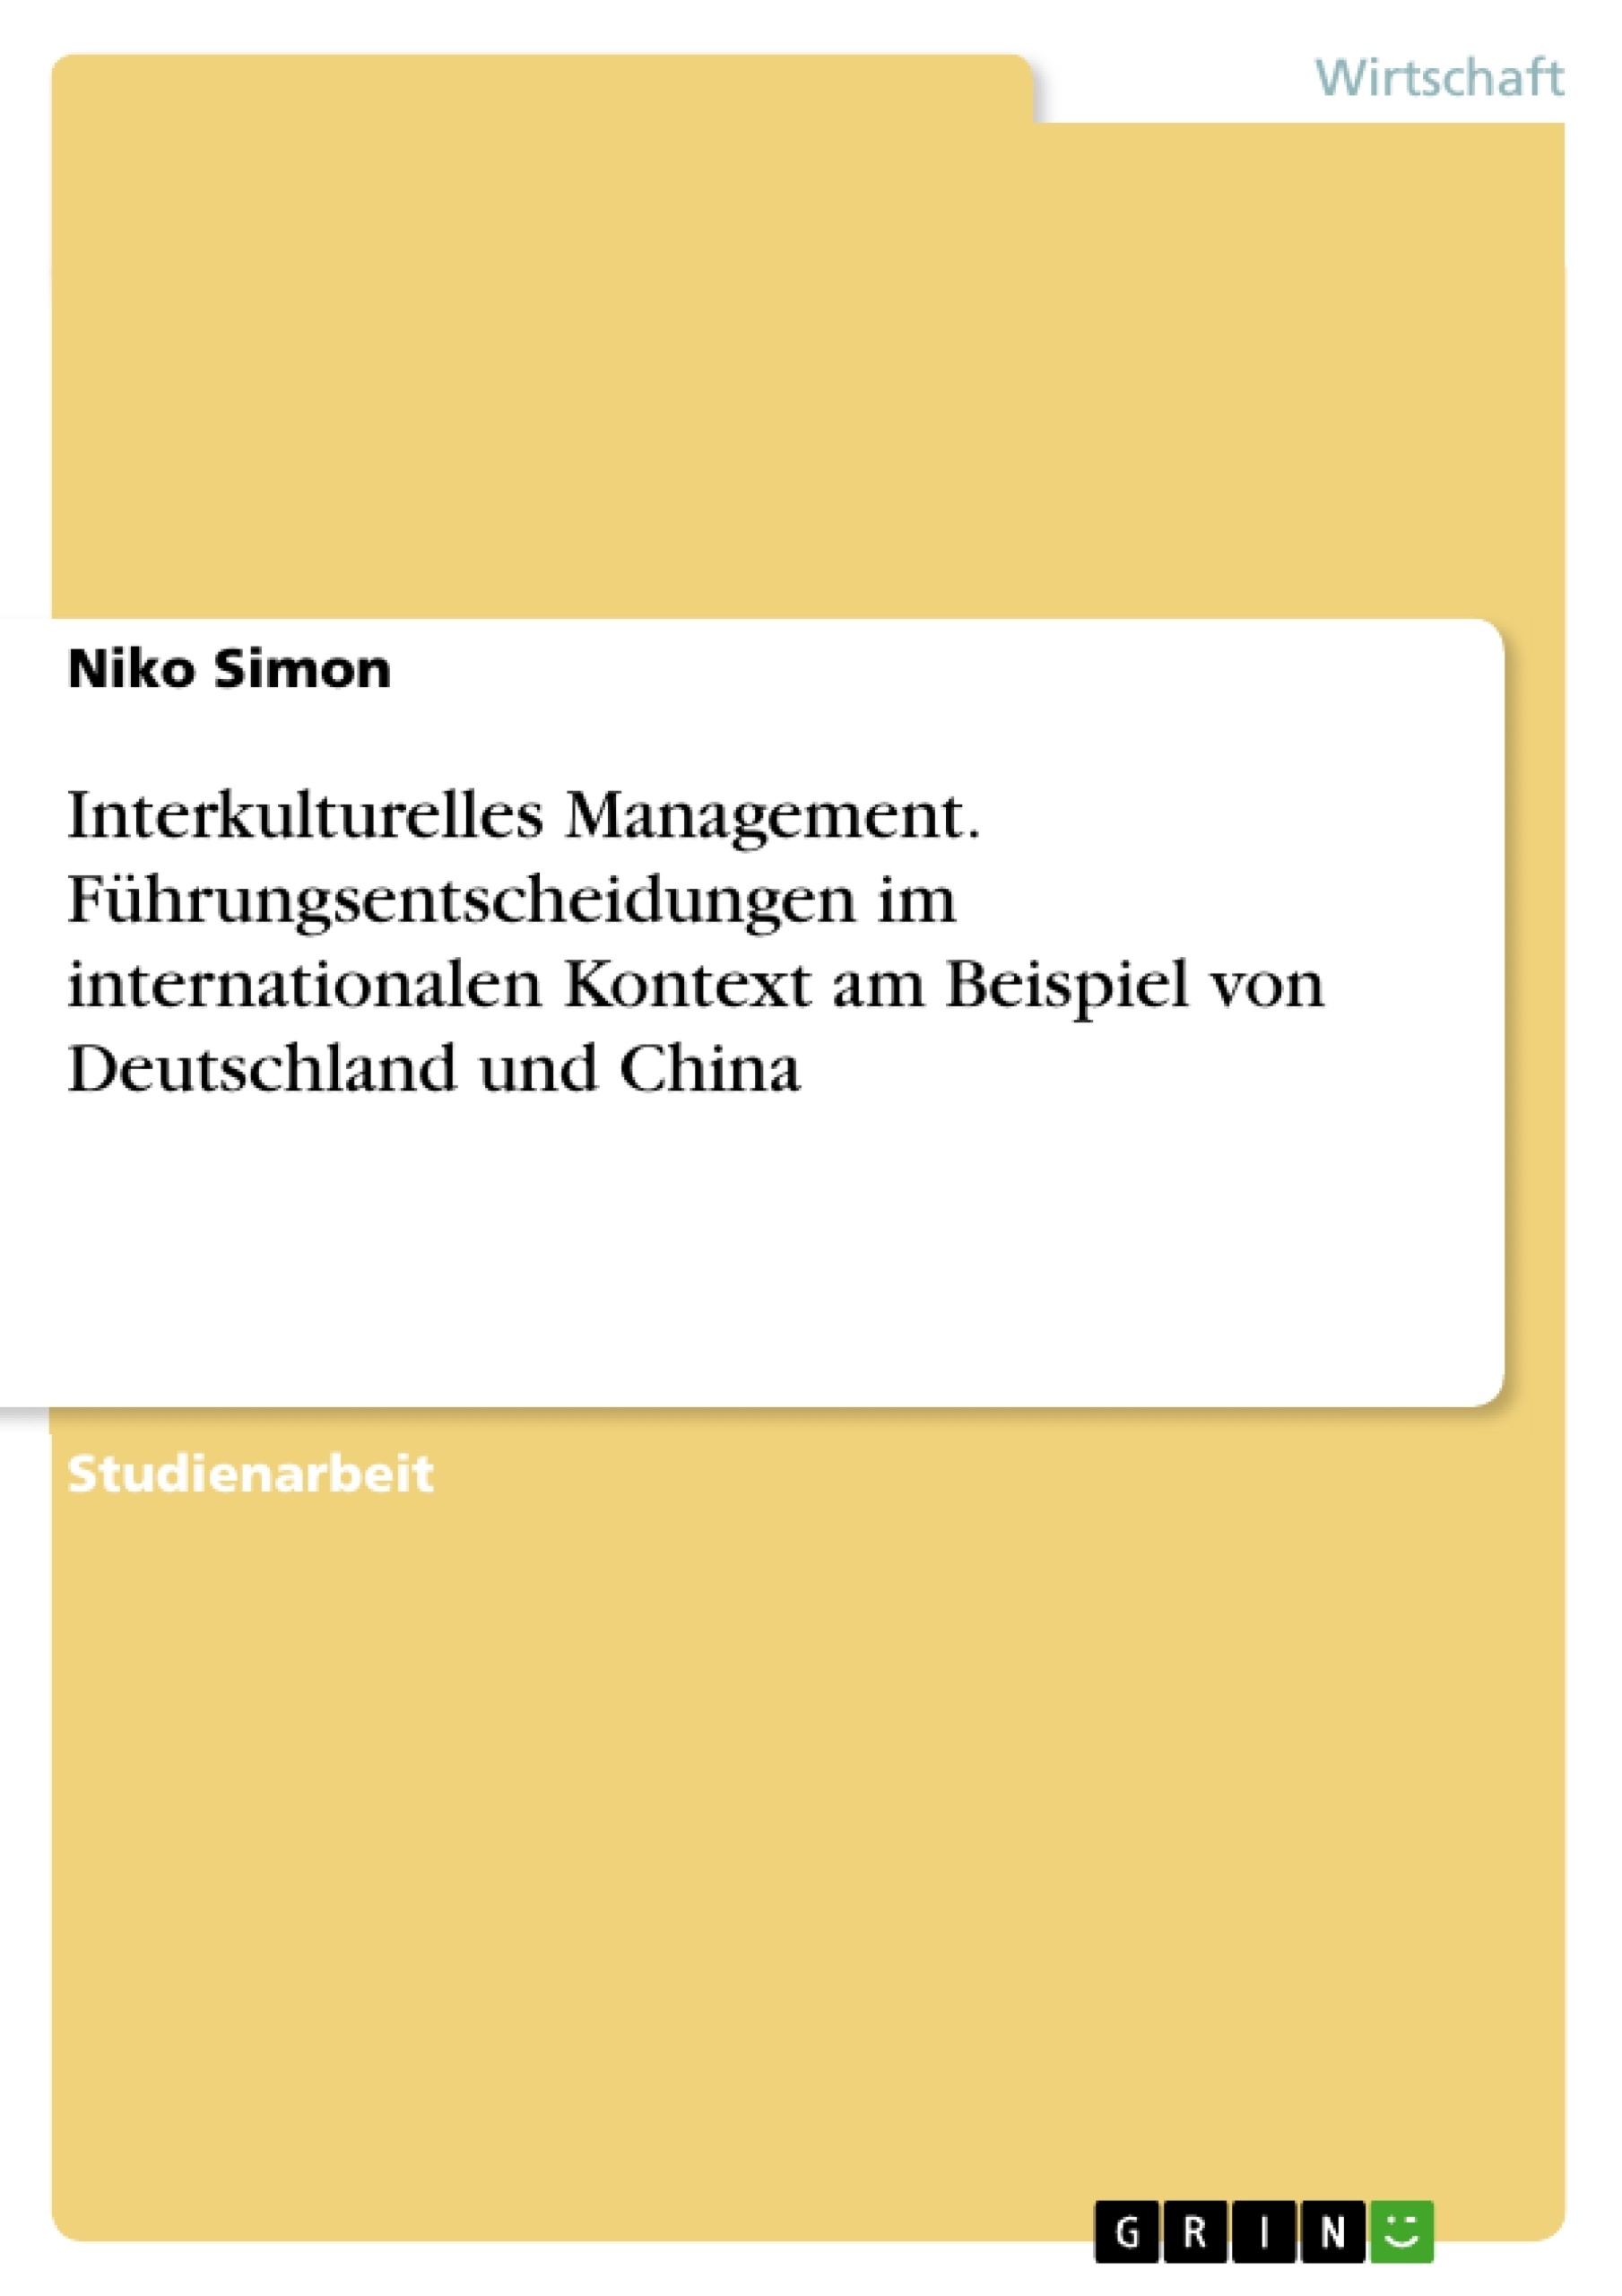 Titel: Interkulturelles Management. Führungsentscheidungen im internationalen Kontext am Beispiel von Deutschland und China